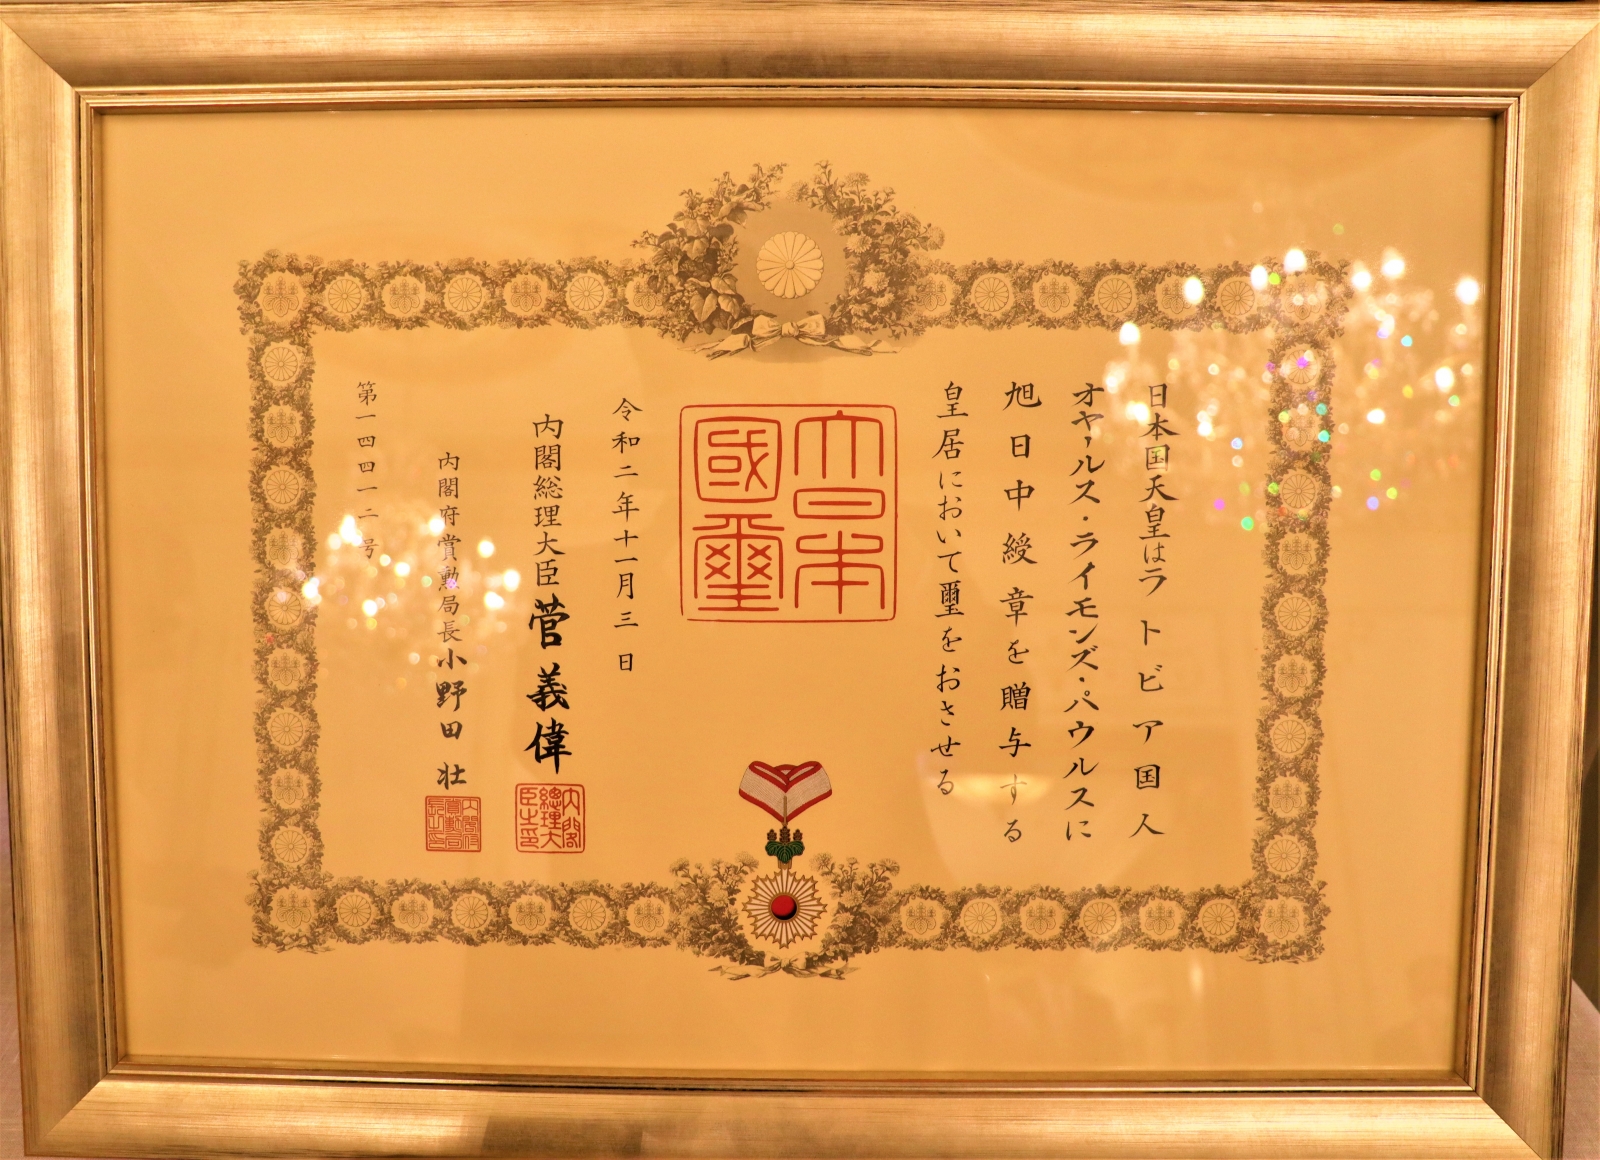 KM parlamentārais sekretārs Ritvars Jansons piedalās Uzlecošās Saules ordeņa un Zelta stari ar kakla lentu pasniegšanas ceremonijā Japānas vēstniecībā